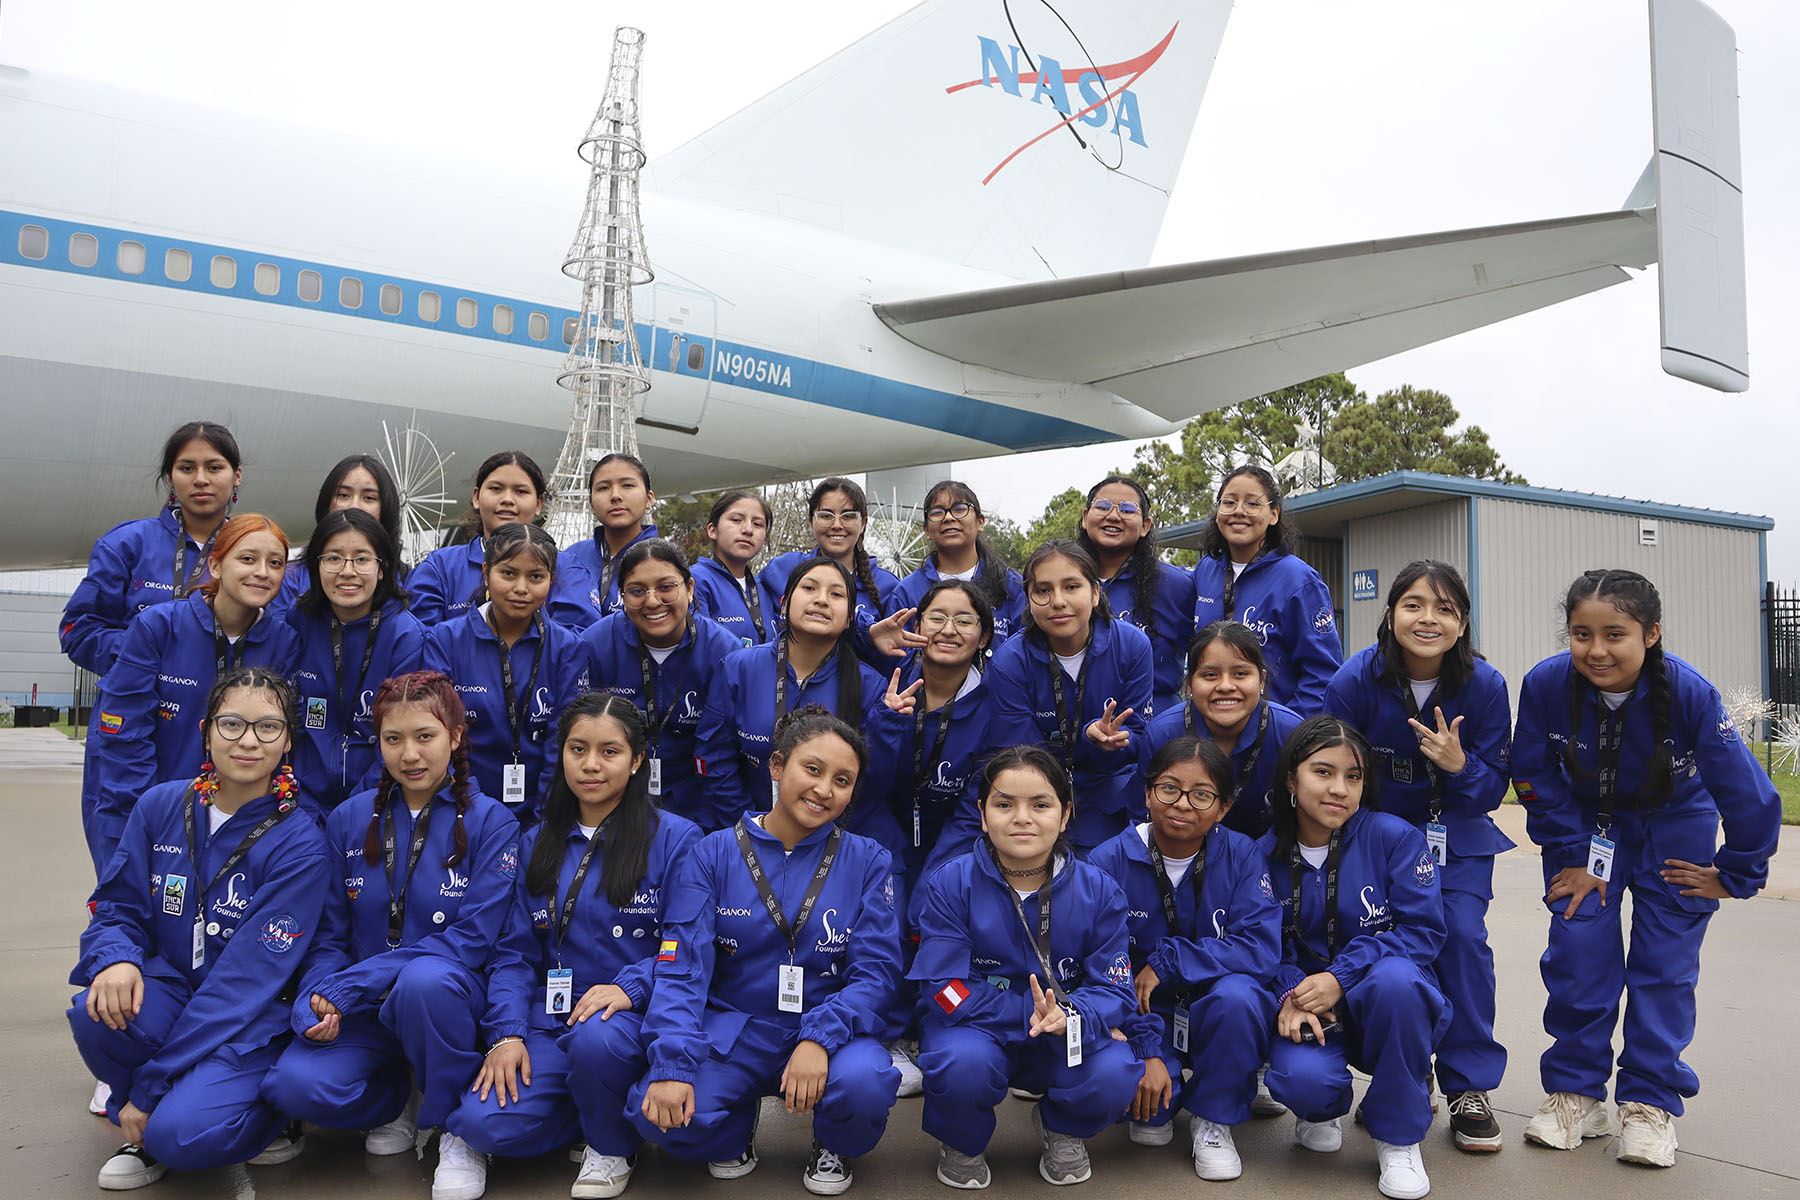 En noviembre, 12 escolares peruanas viajaron al Centro Espacial Houston de la NASA donde fueron parte de un programa educativo en ciencia y tecnología.